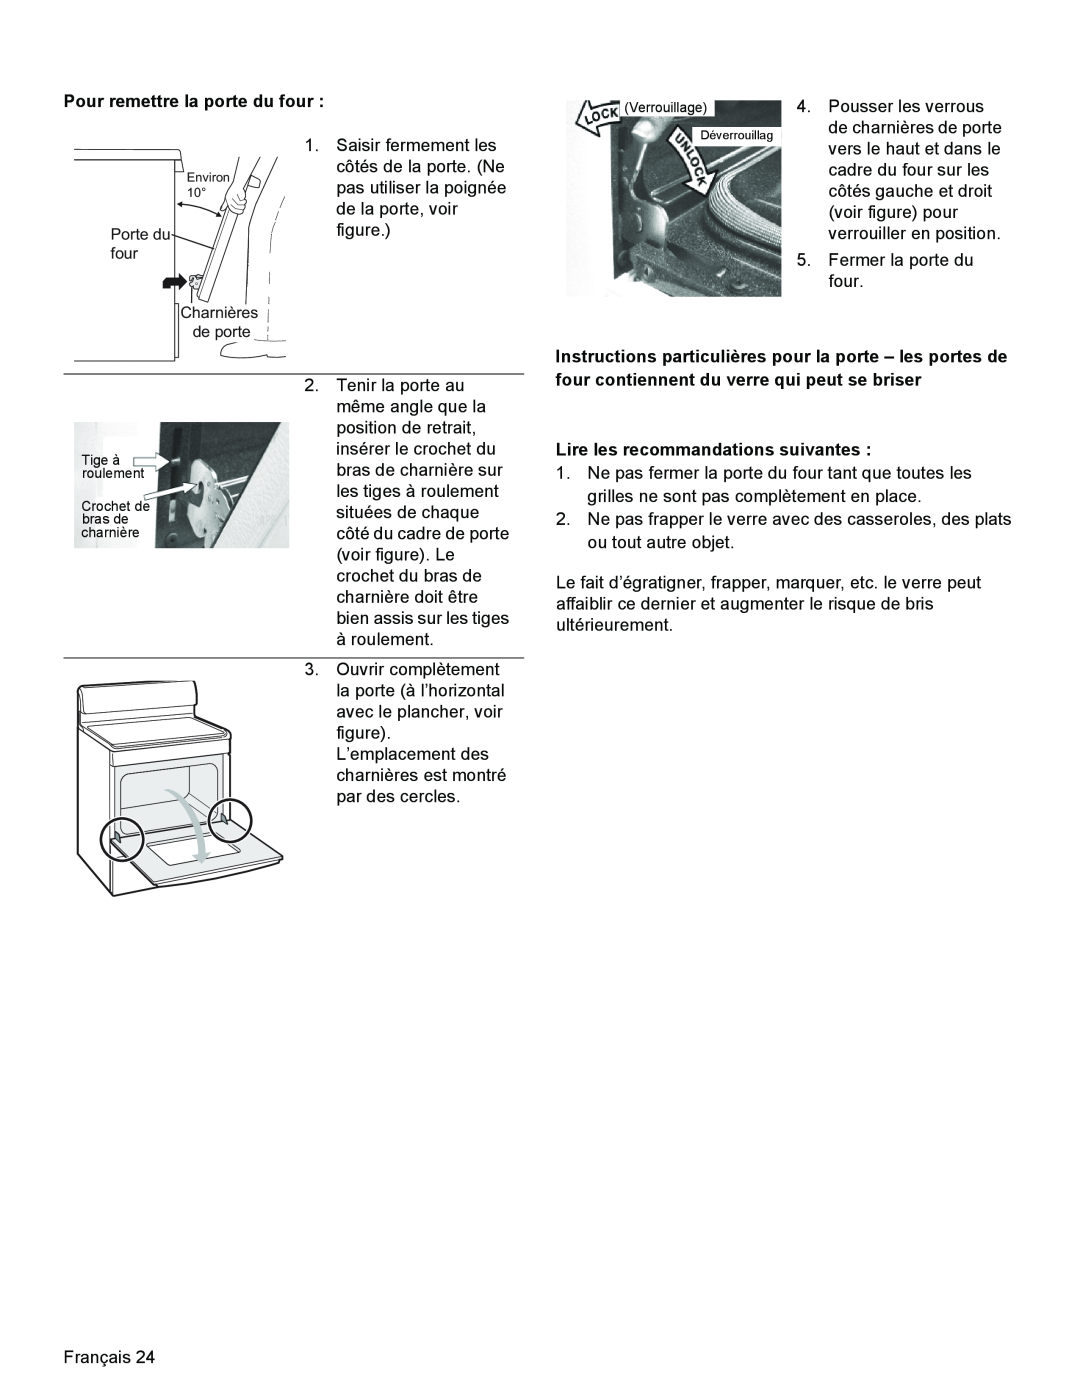 Bosch Appliances HGS3023UC manual Pour remettre la porte du four, Lire les recommandations suivantes, Porte du four 